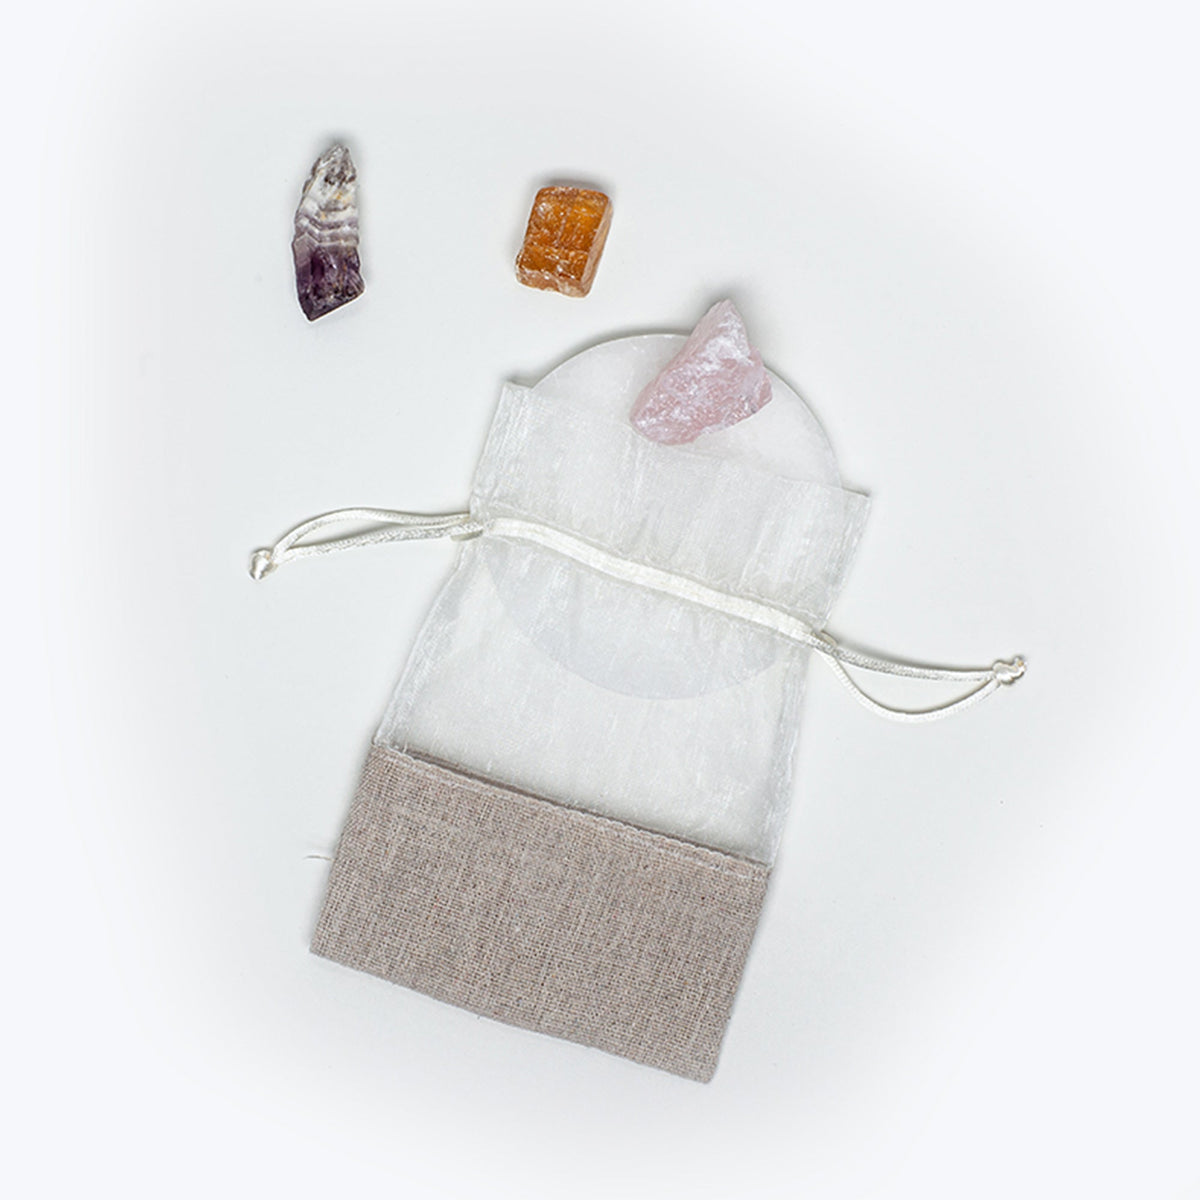 three meditation crystals